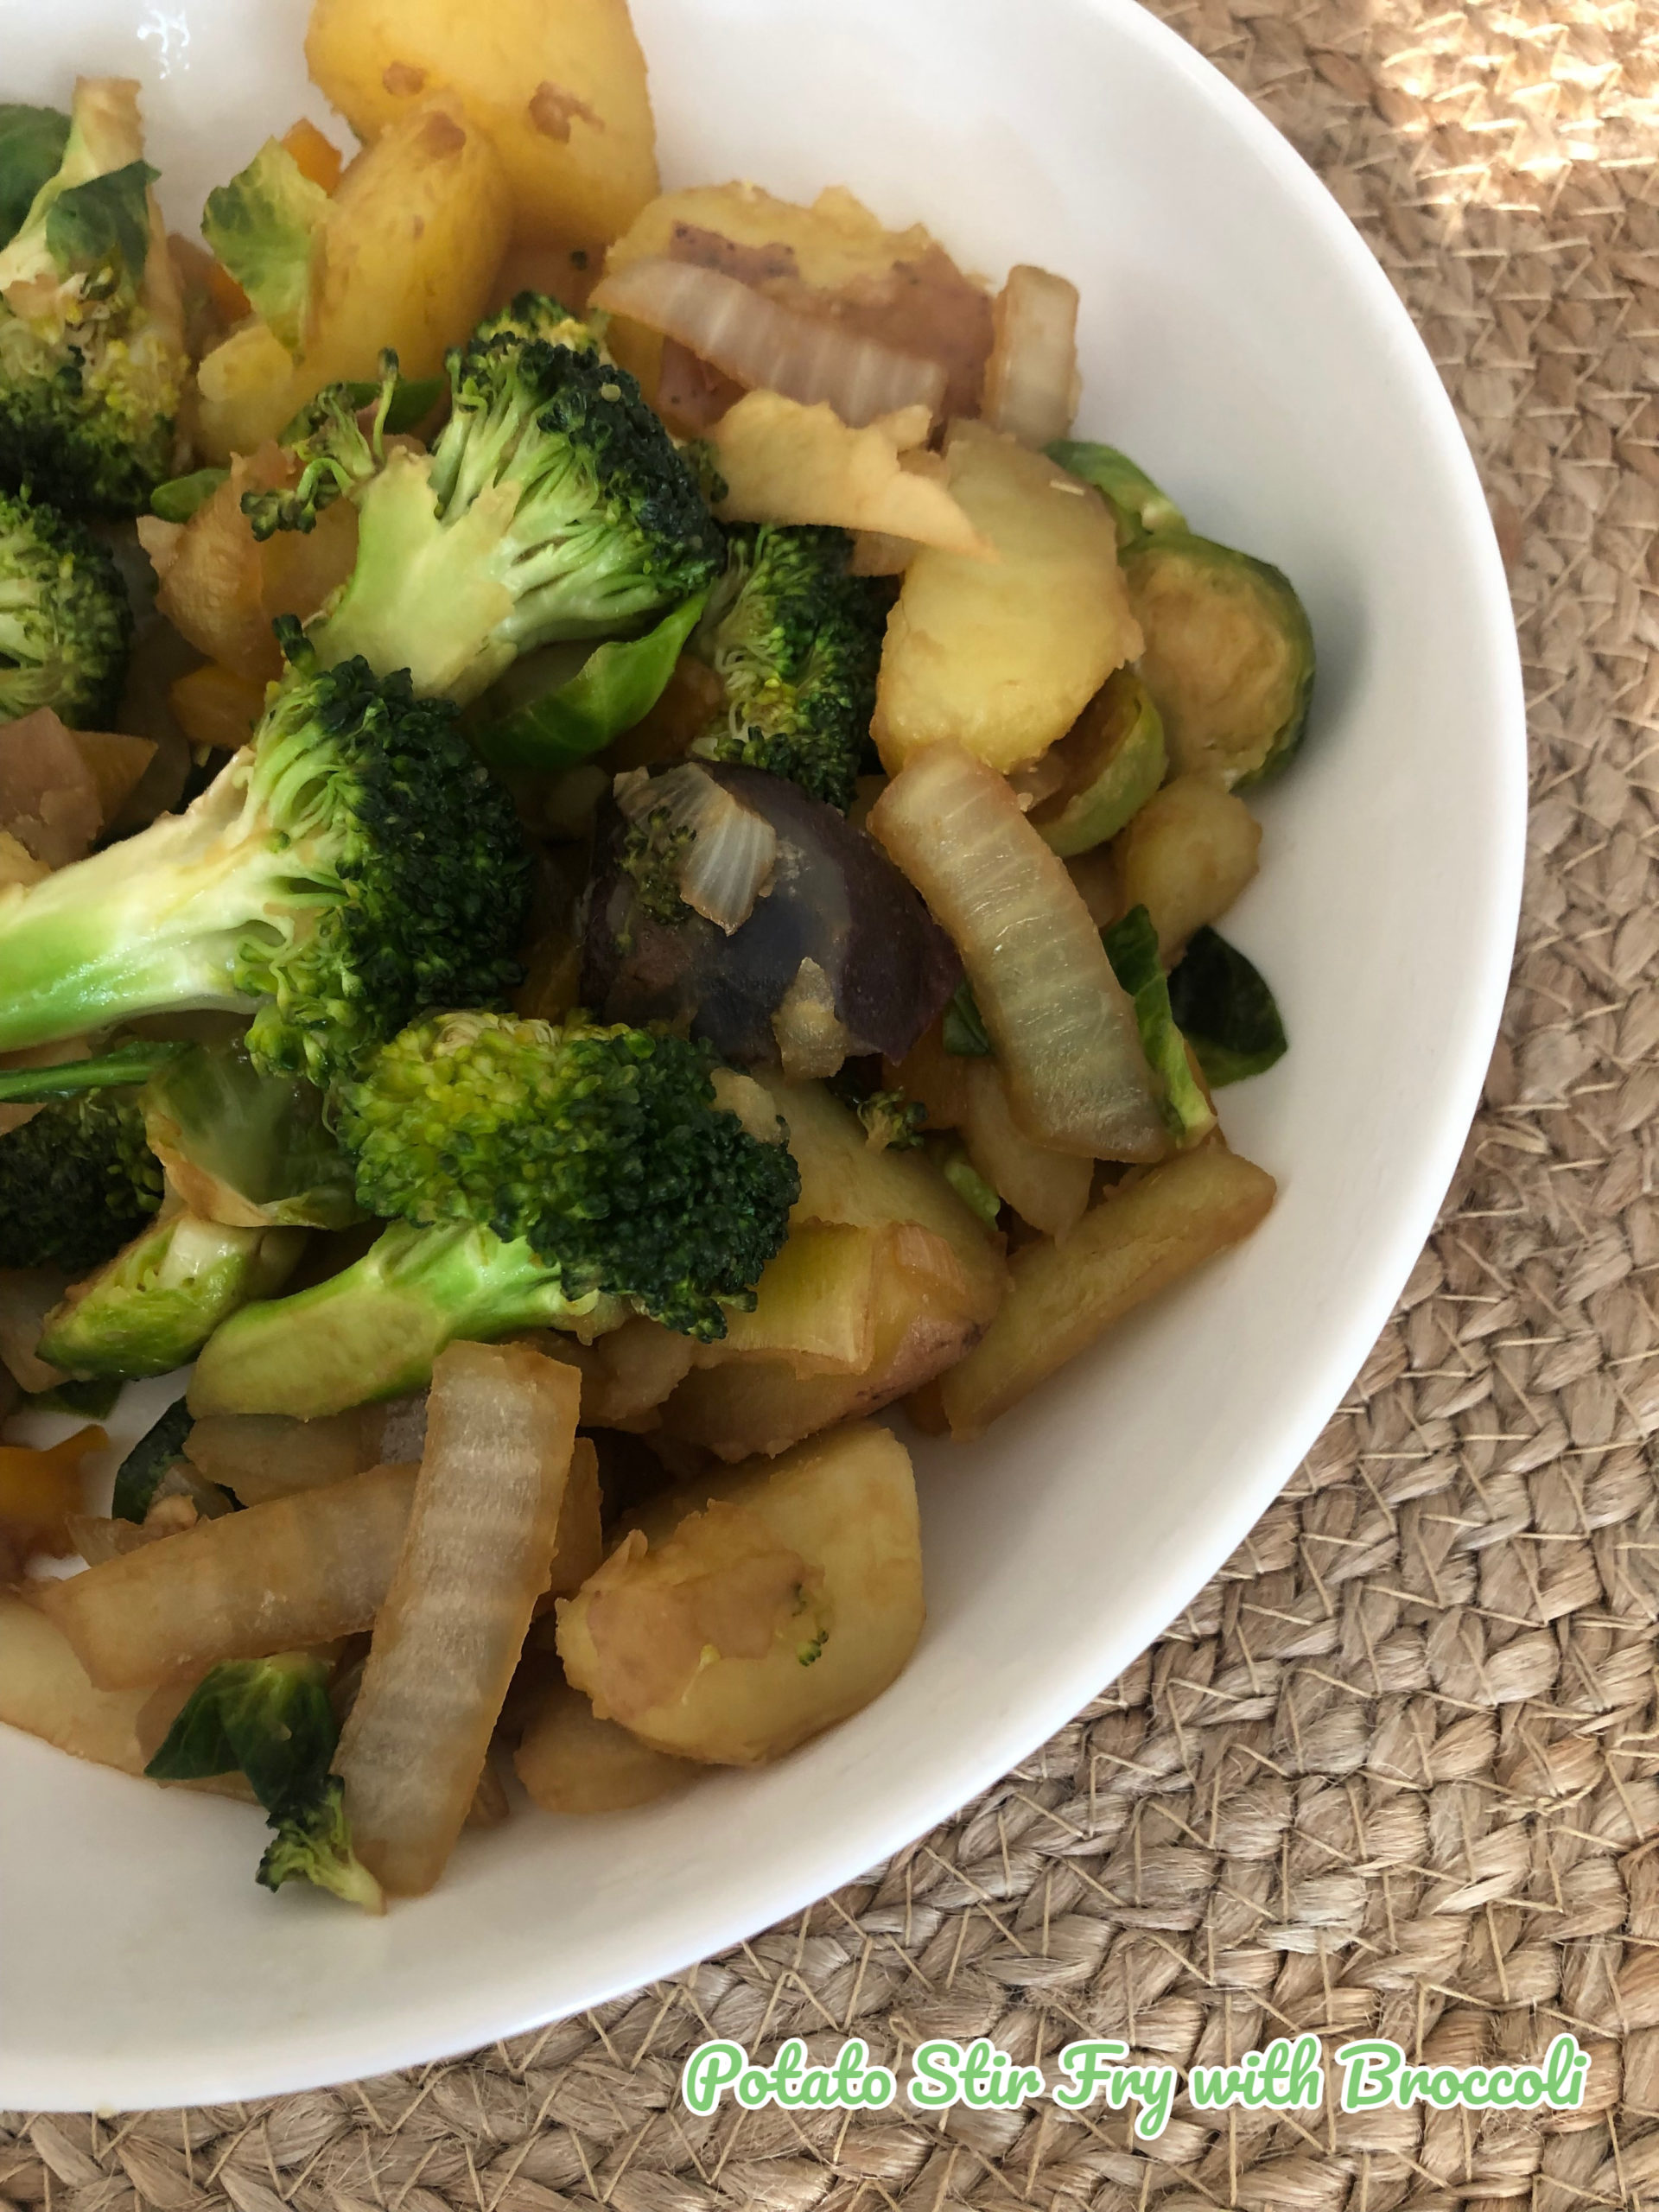 Potato Stir Fry with Broccoli